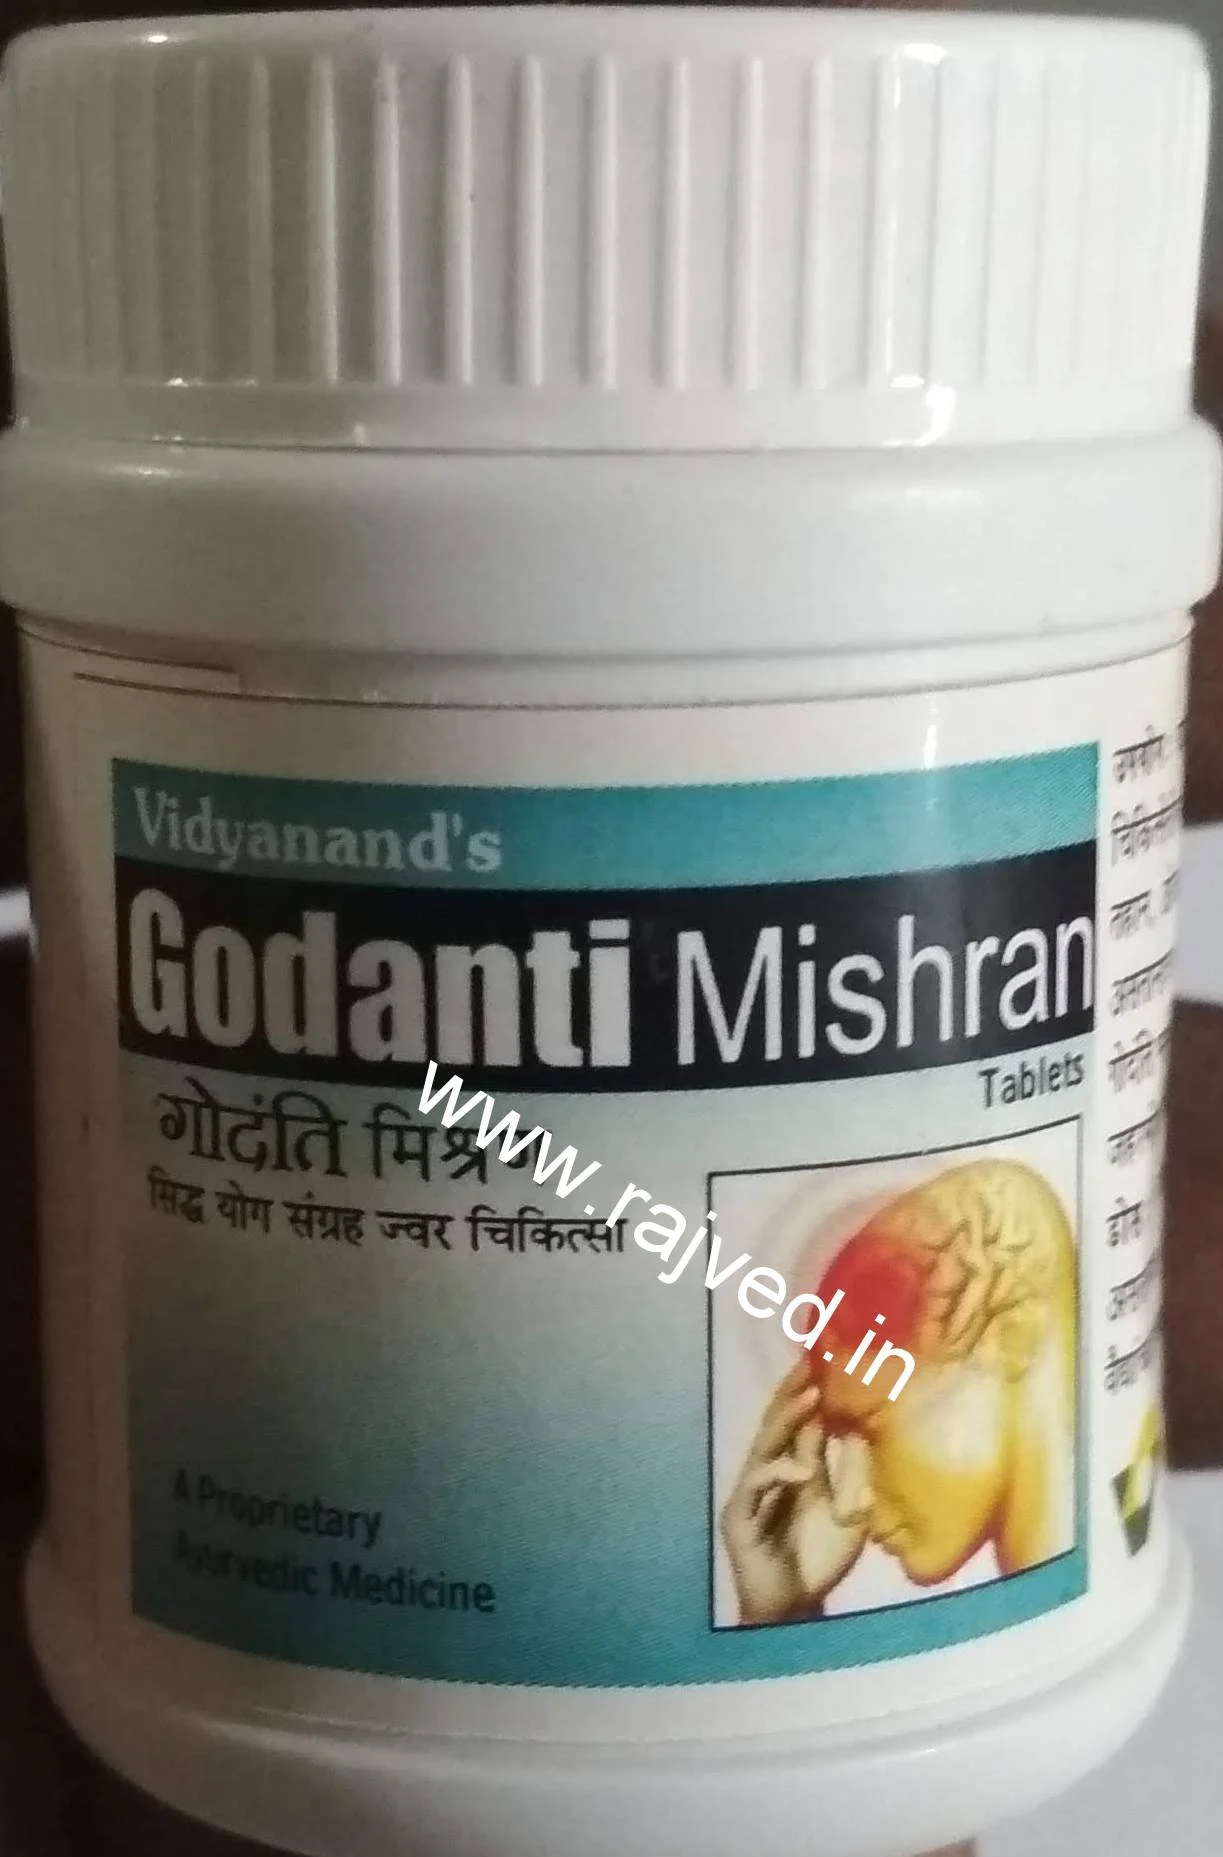 godanti mishran 1000 tab upto 15% off Vidyanand Labs Pvt.Ltd